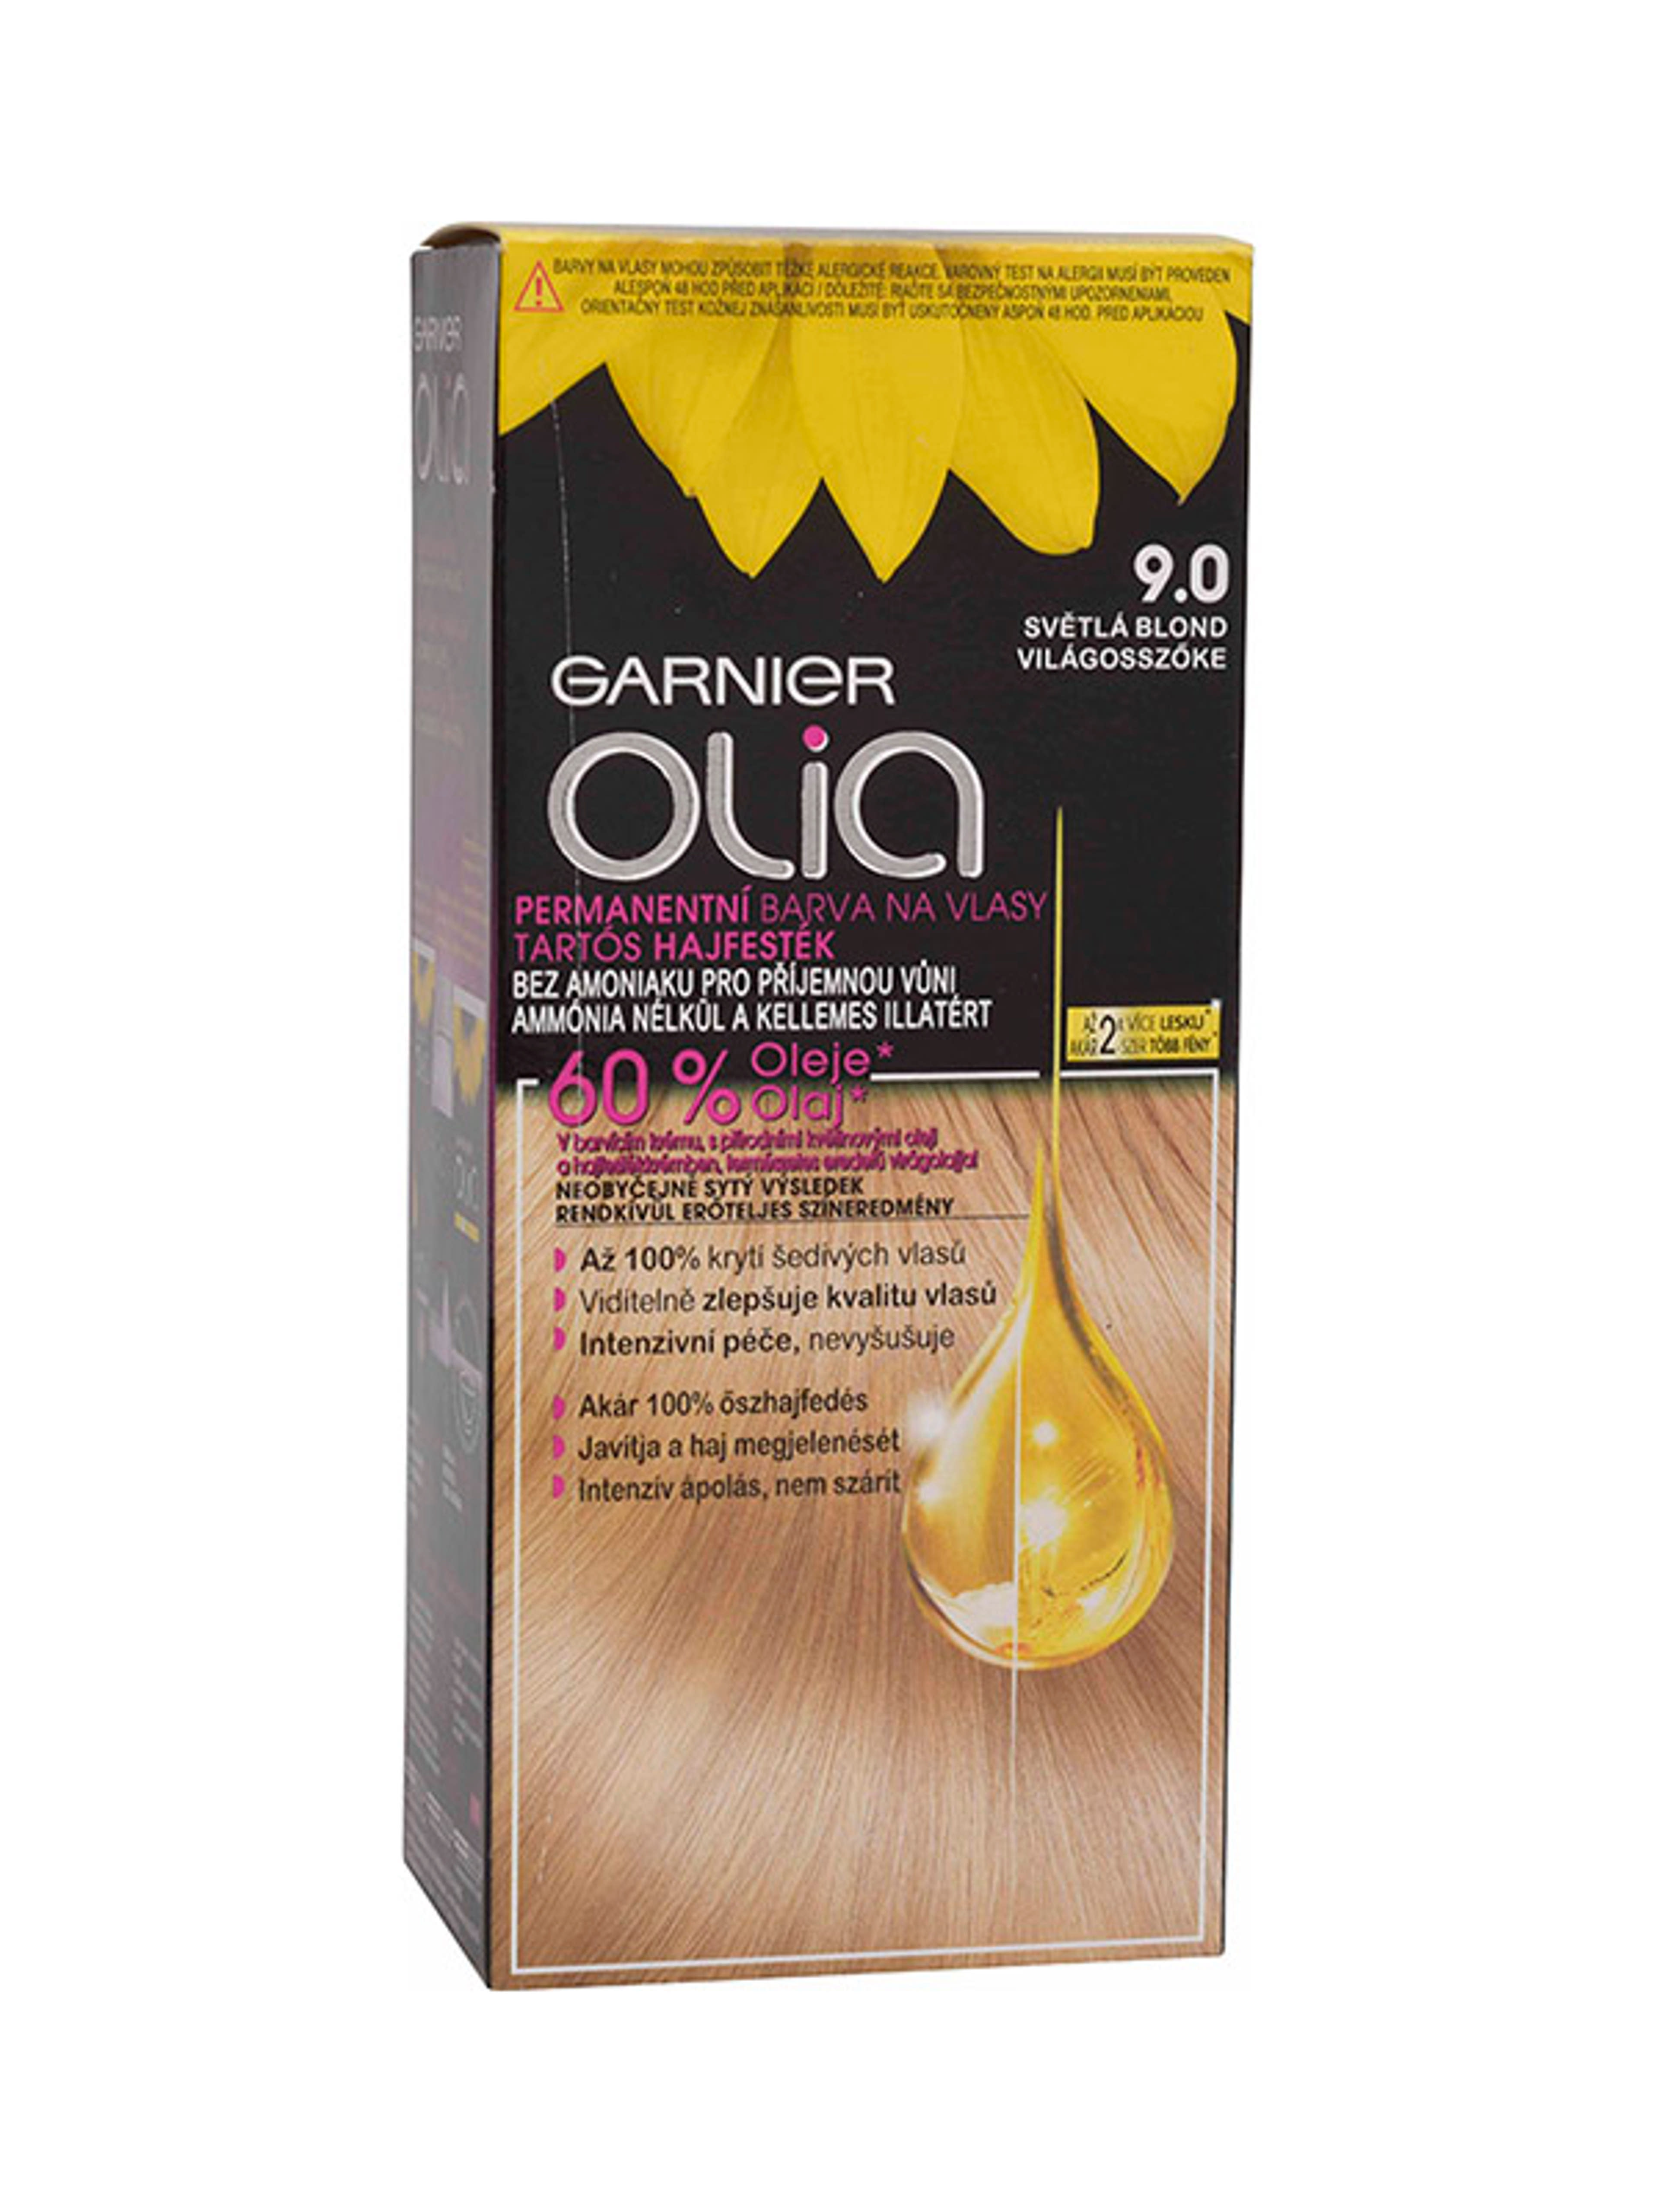 Garnier Olia tartós hajfesték 9.0 Világosszőke - 1 db